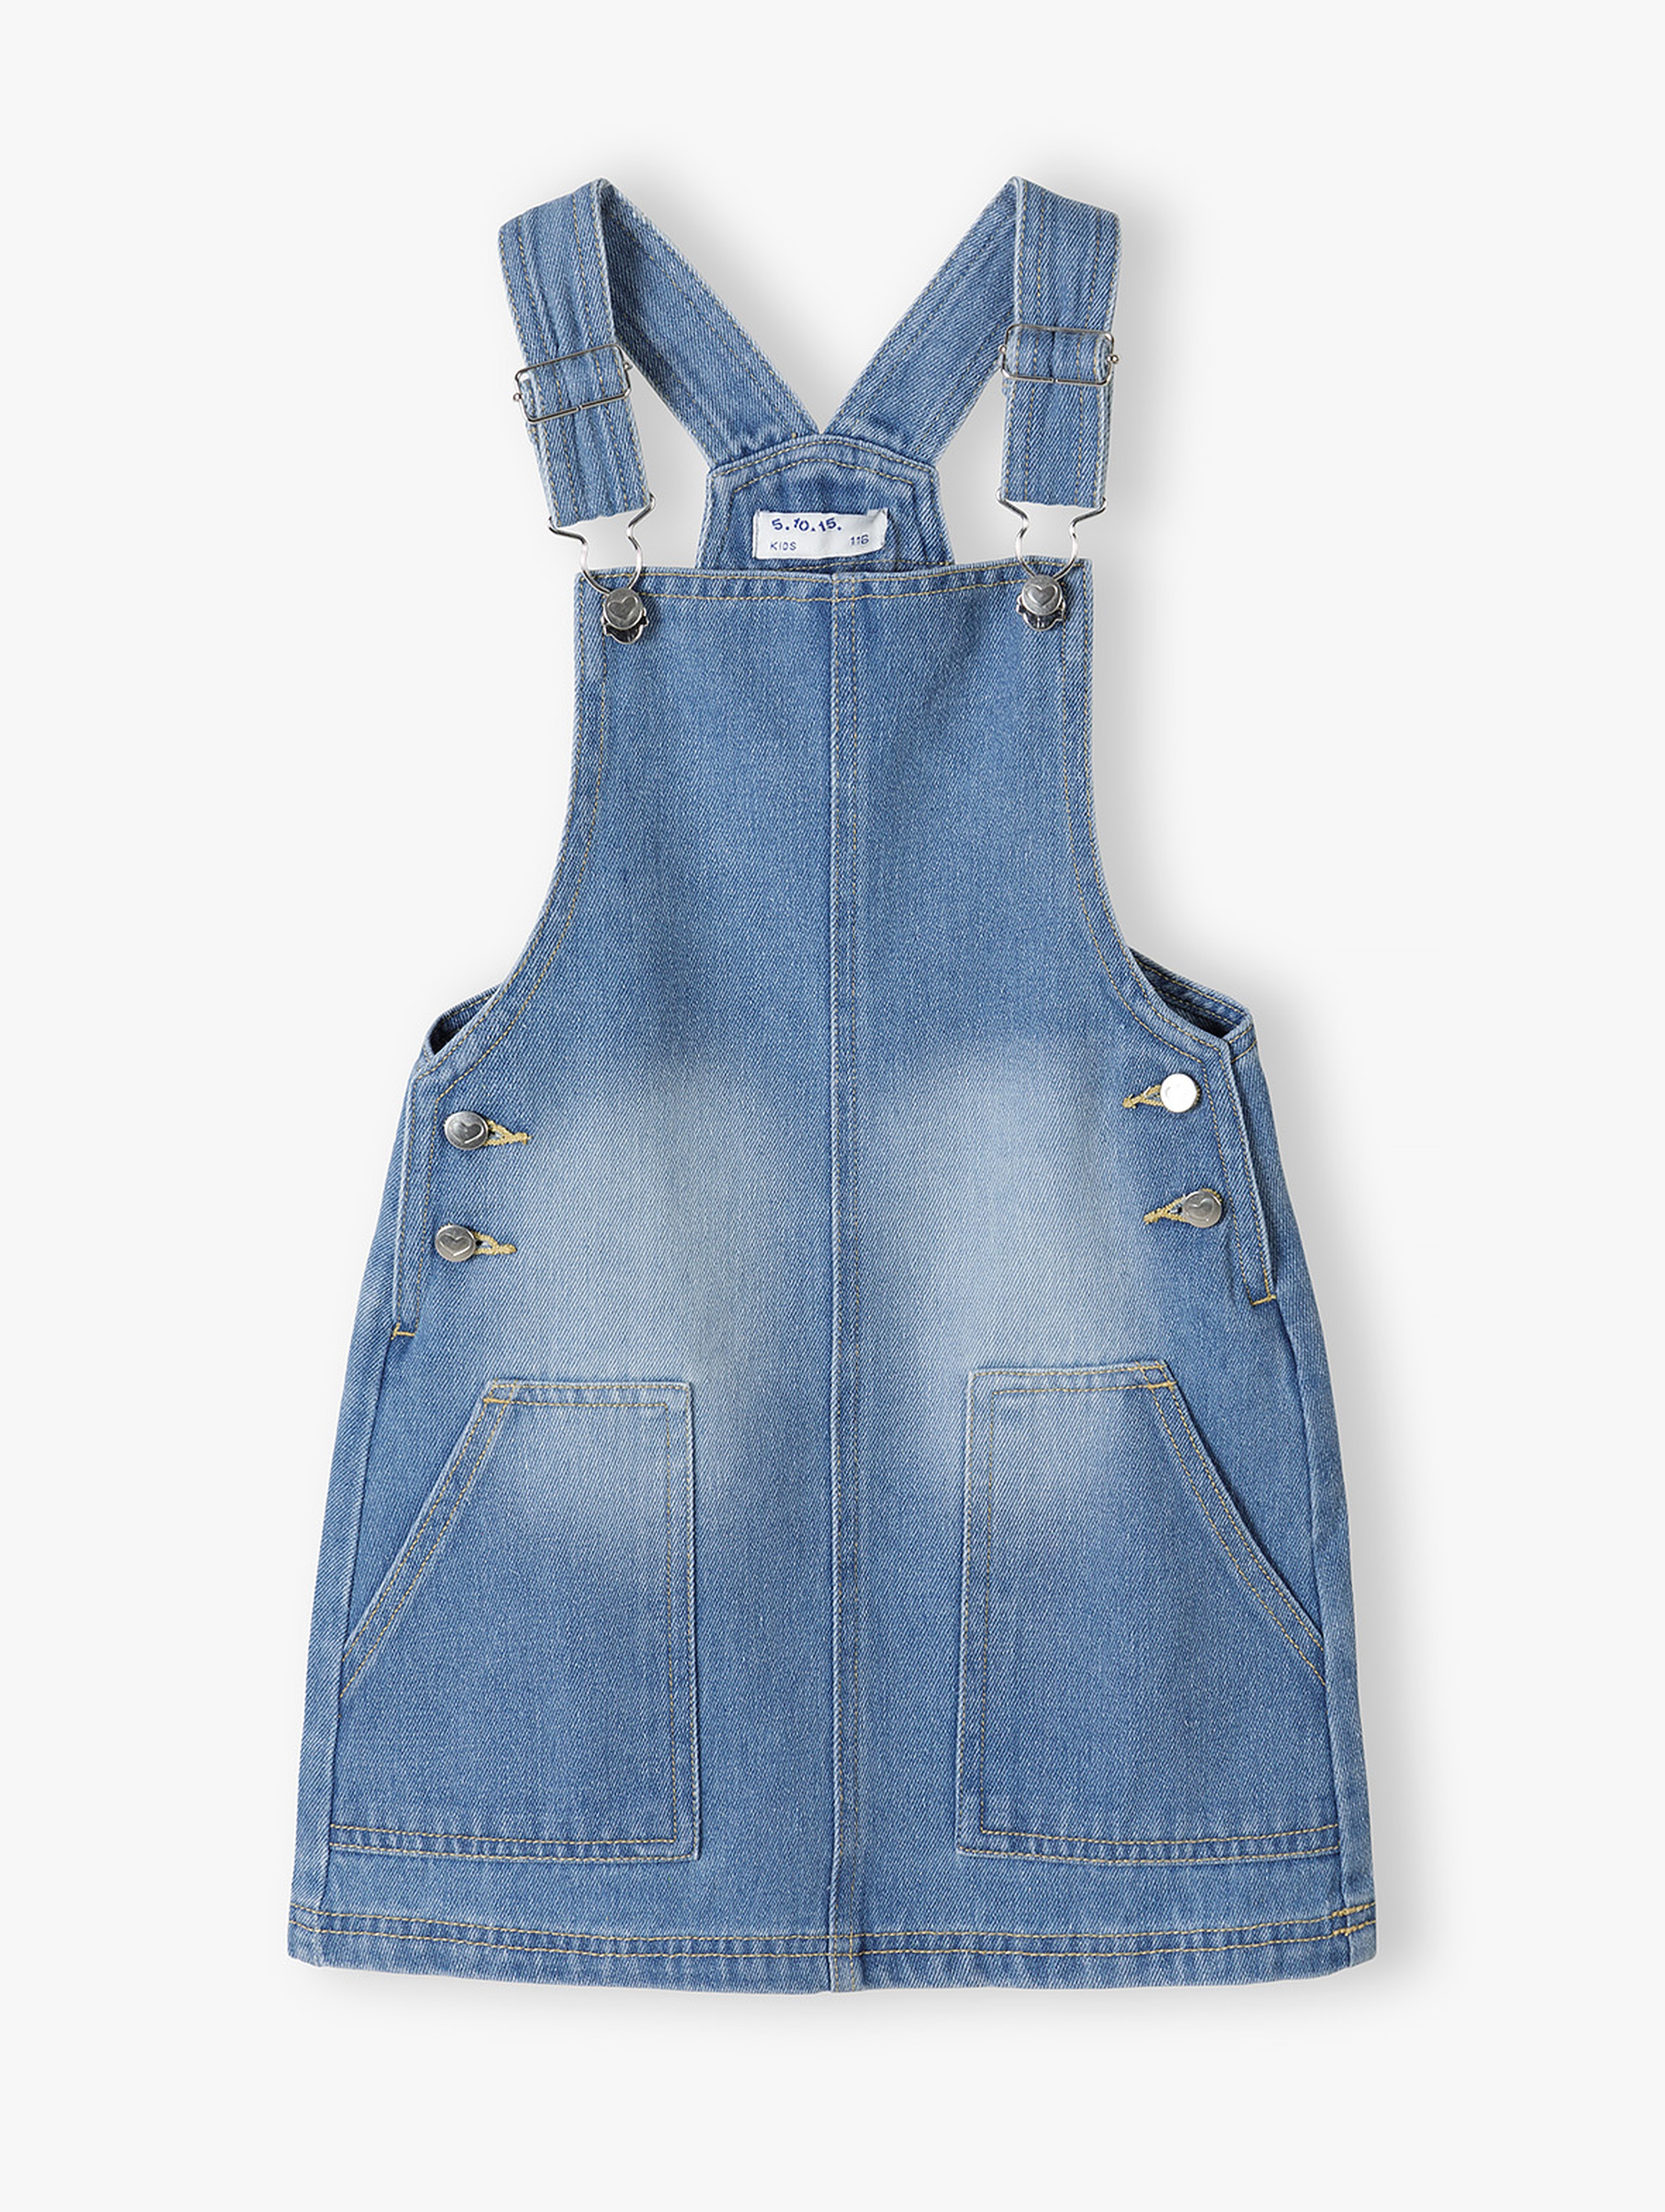 Jeansowa sukienka ogrodniczka dla dziewczynki - niebieska